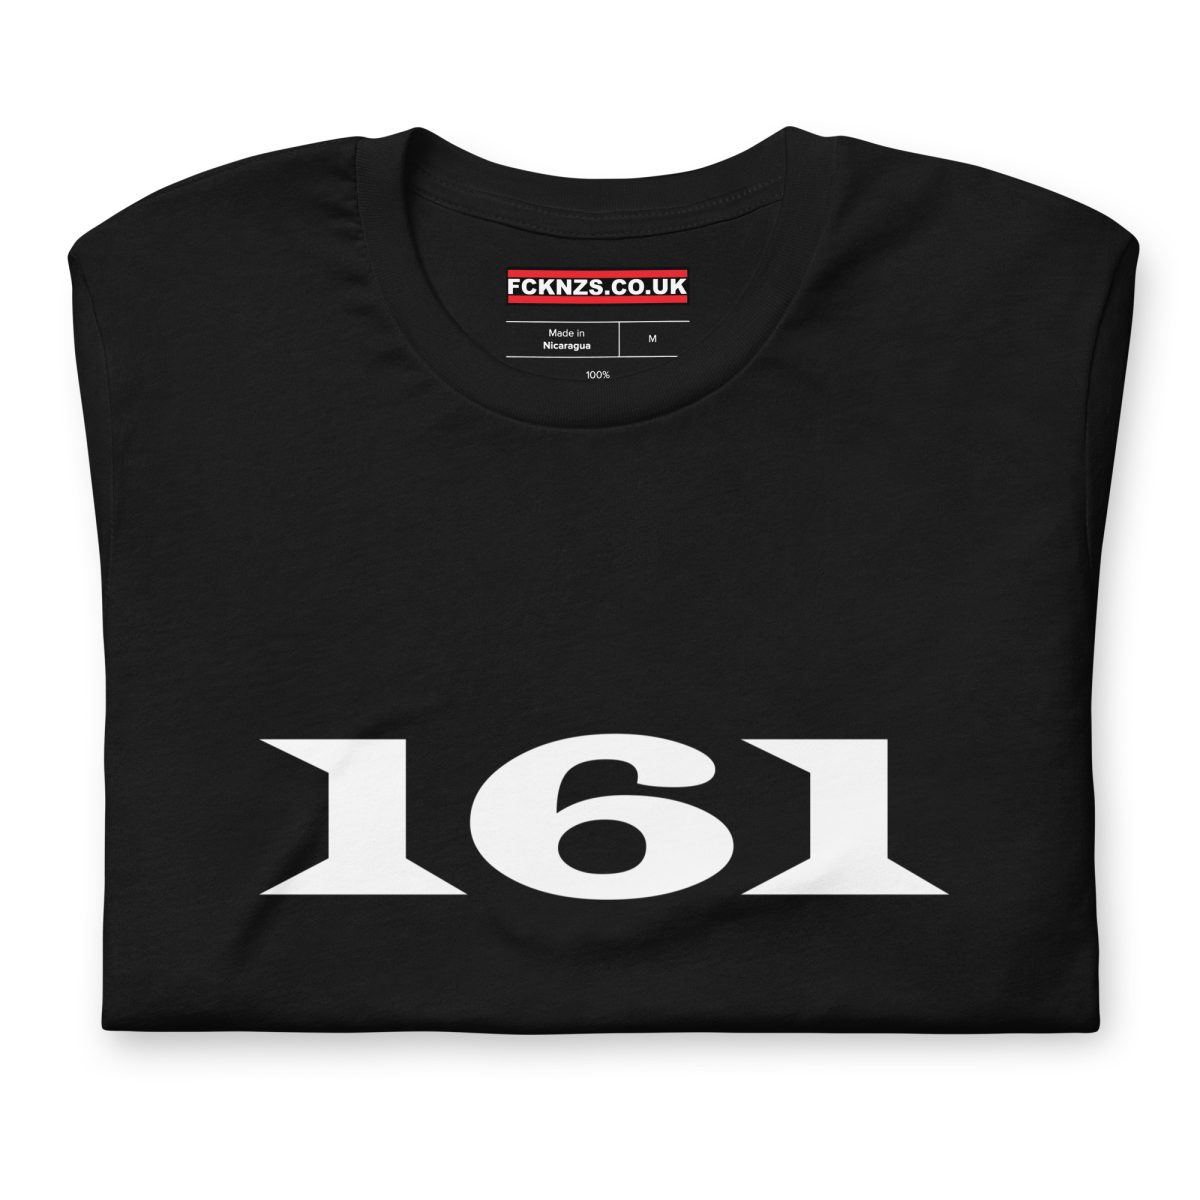 161 AFA Unisex T-Shirt